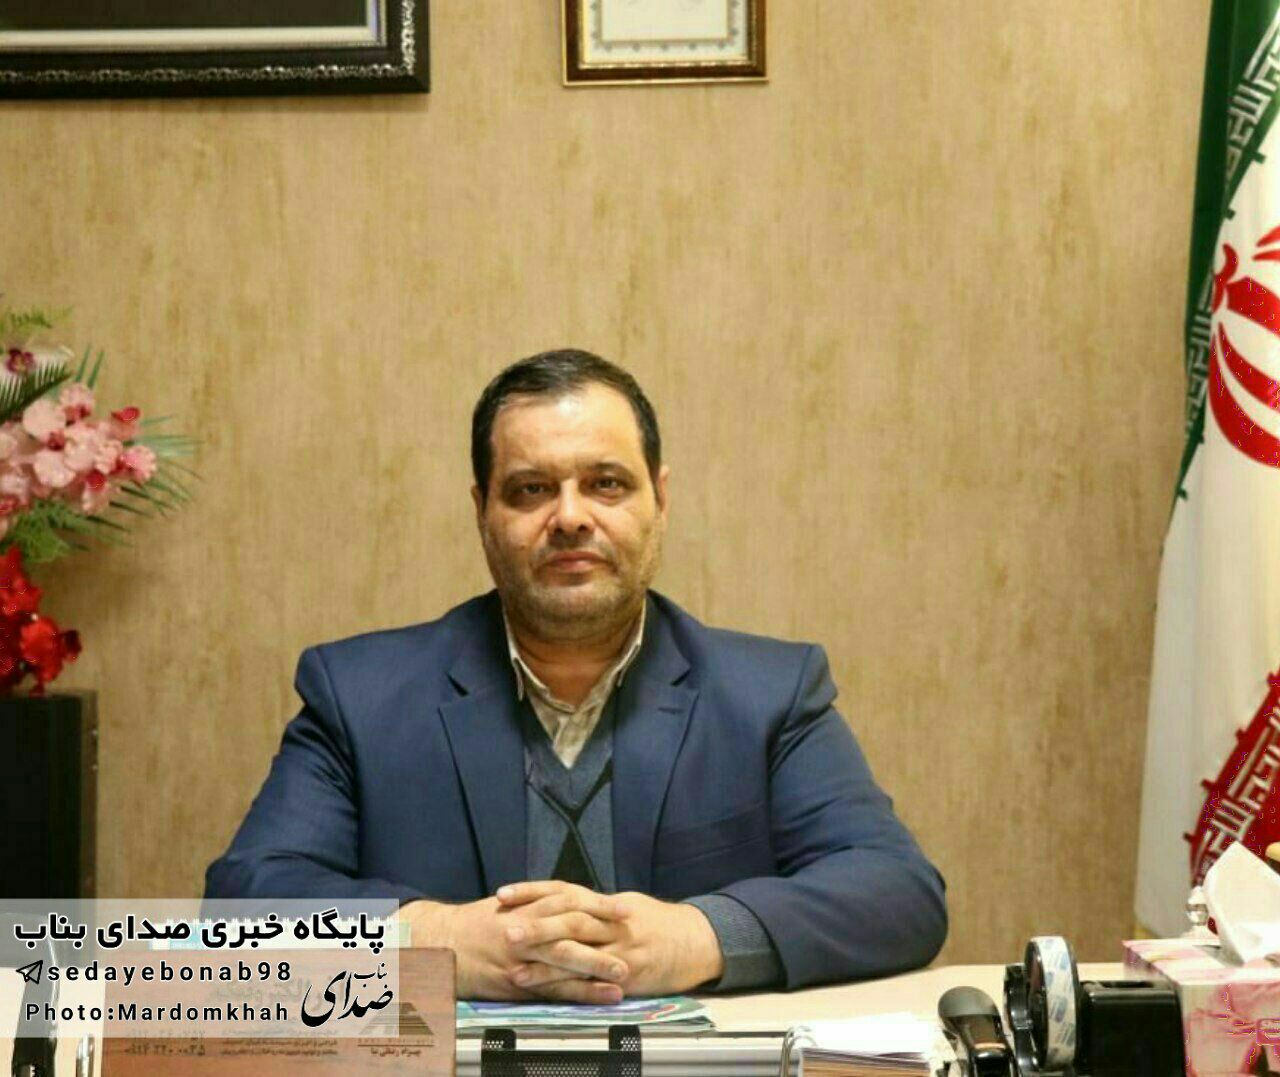 پیام تبریک رئیس سازمان حمل و نقل عمومی شهرستان بناب به مناسبت دهه فجر و فرا رسیدن یوم الله 22 بهمن